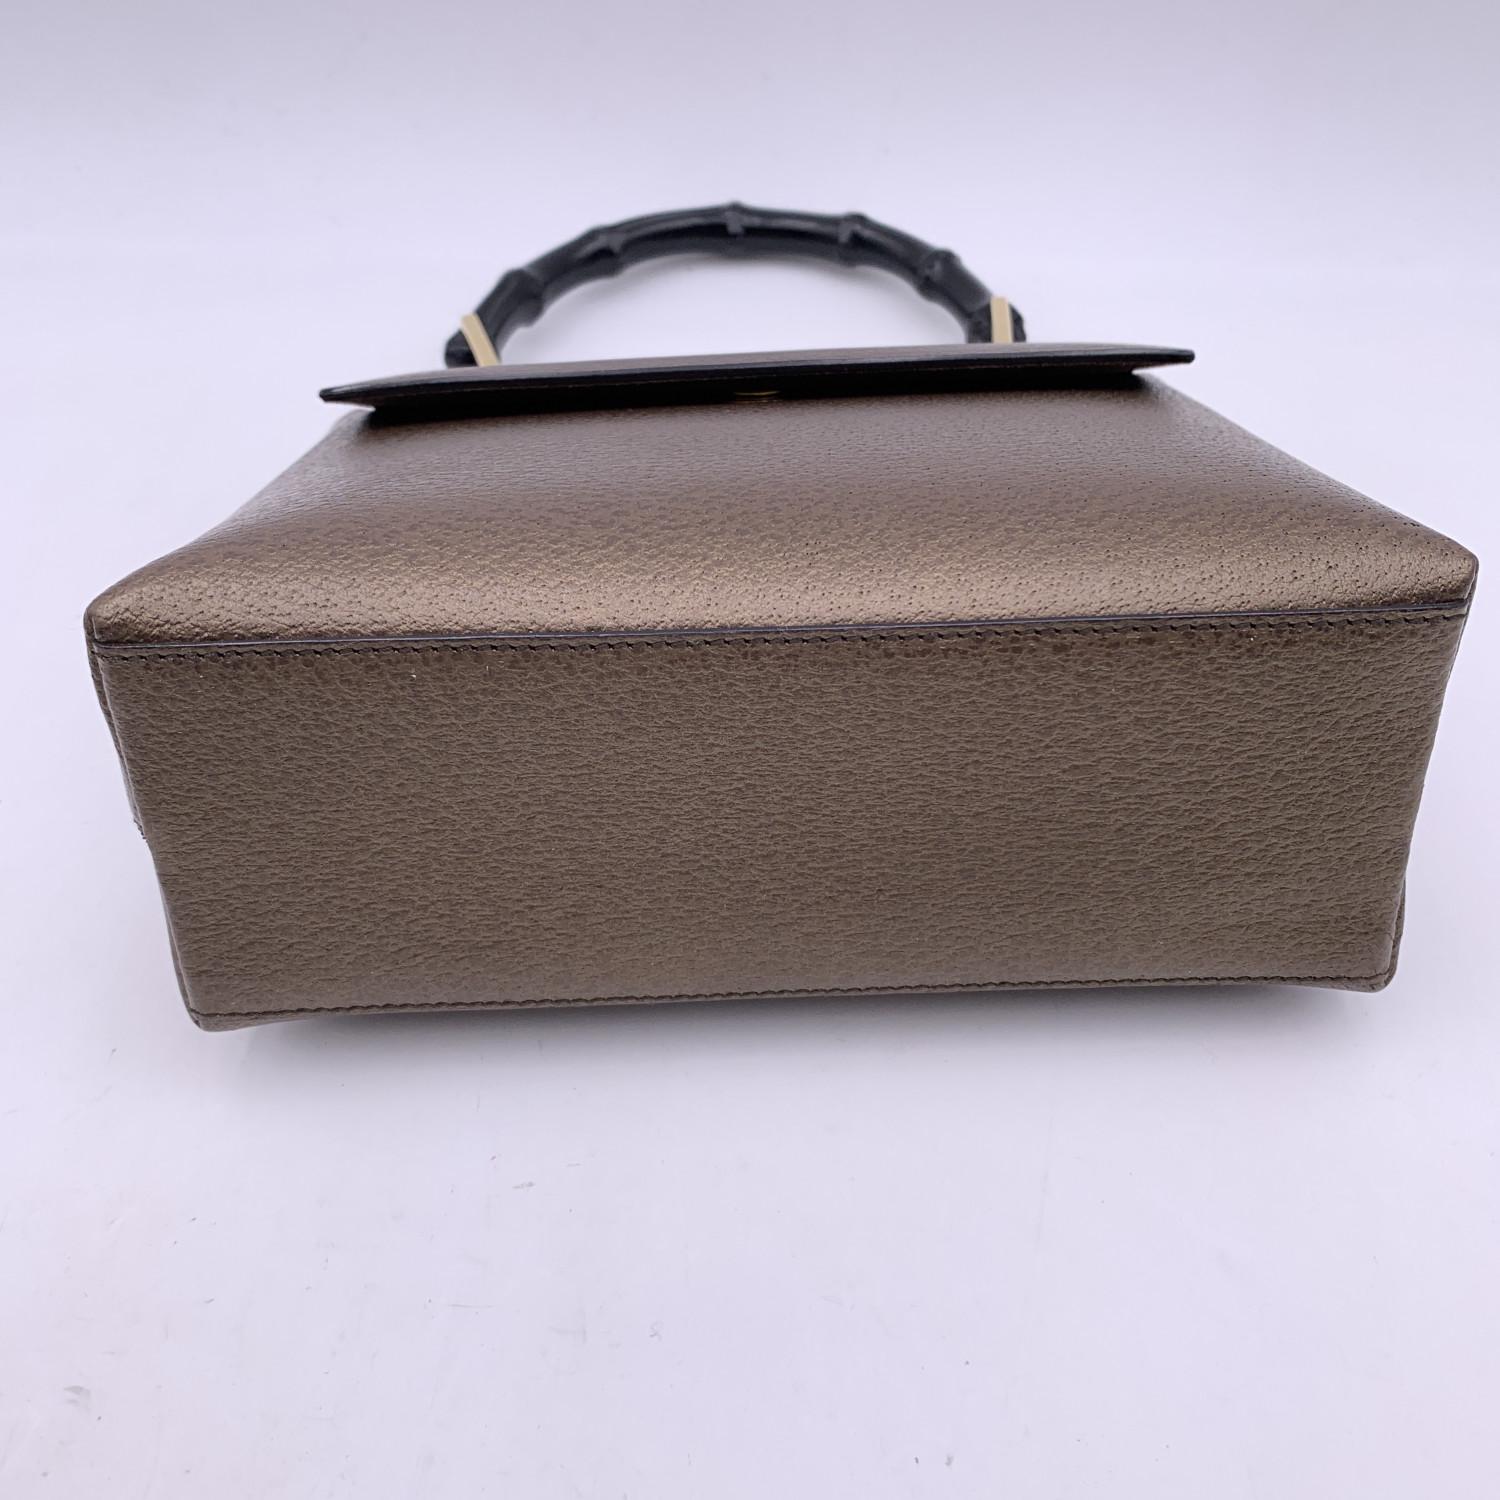 Gucci Vintage Brown Leather Bamboo Handle Small Box Handbag Bag 1